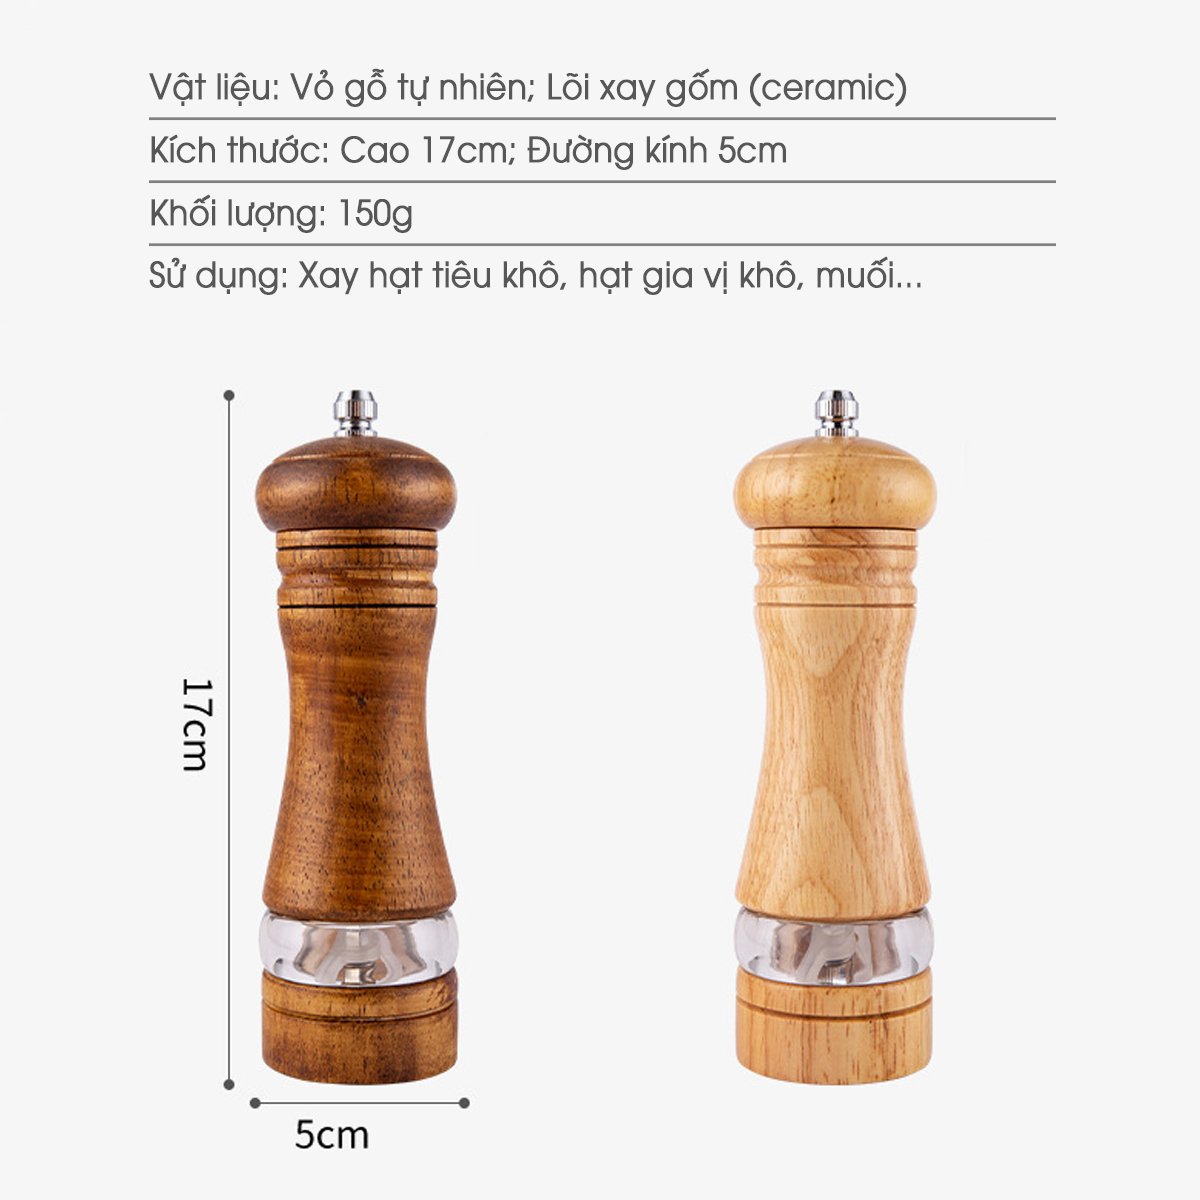 Lọ xay tiêu vỏ gỗ (GA15) thiết kế cổ điển sang trọng cho nhà hàng hoặc gia đình